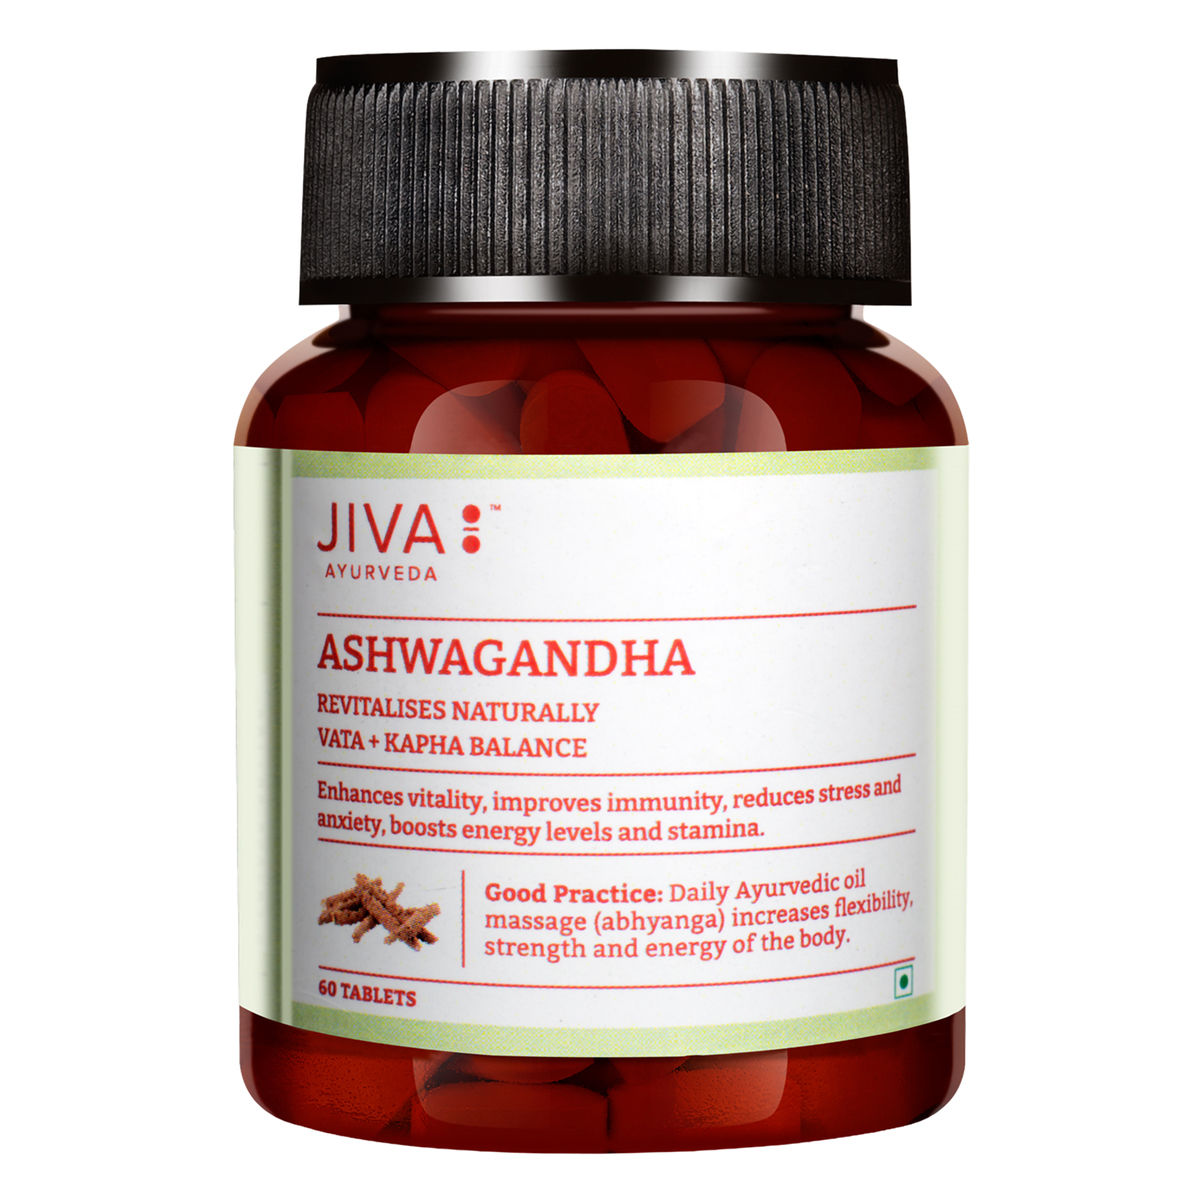 Buy Jiva Ashwagandha, 60 Tablets Online